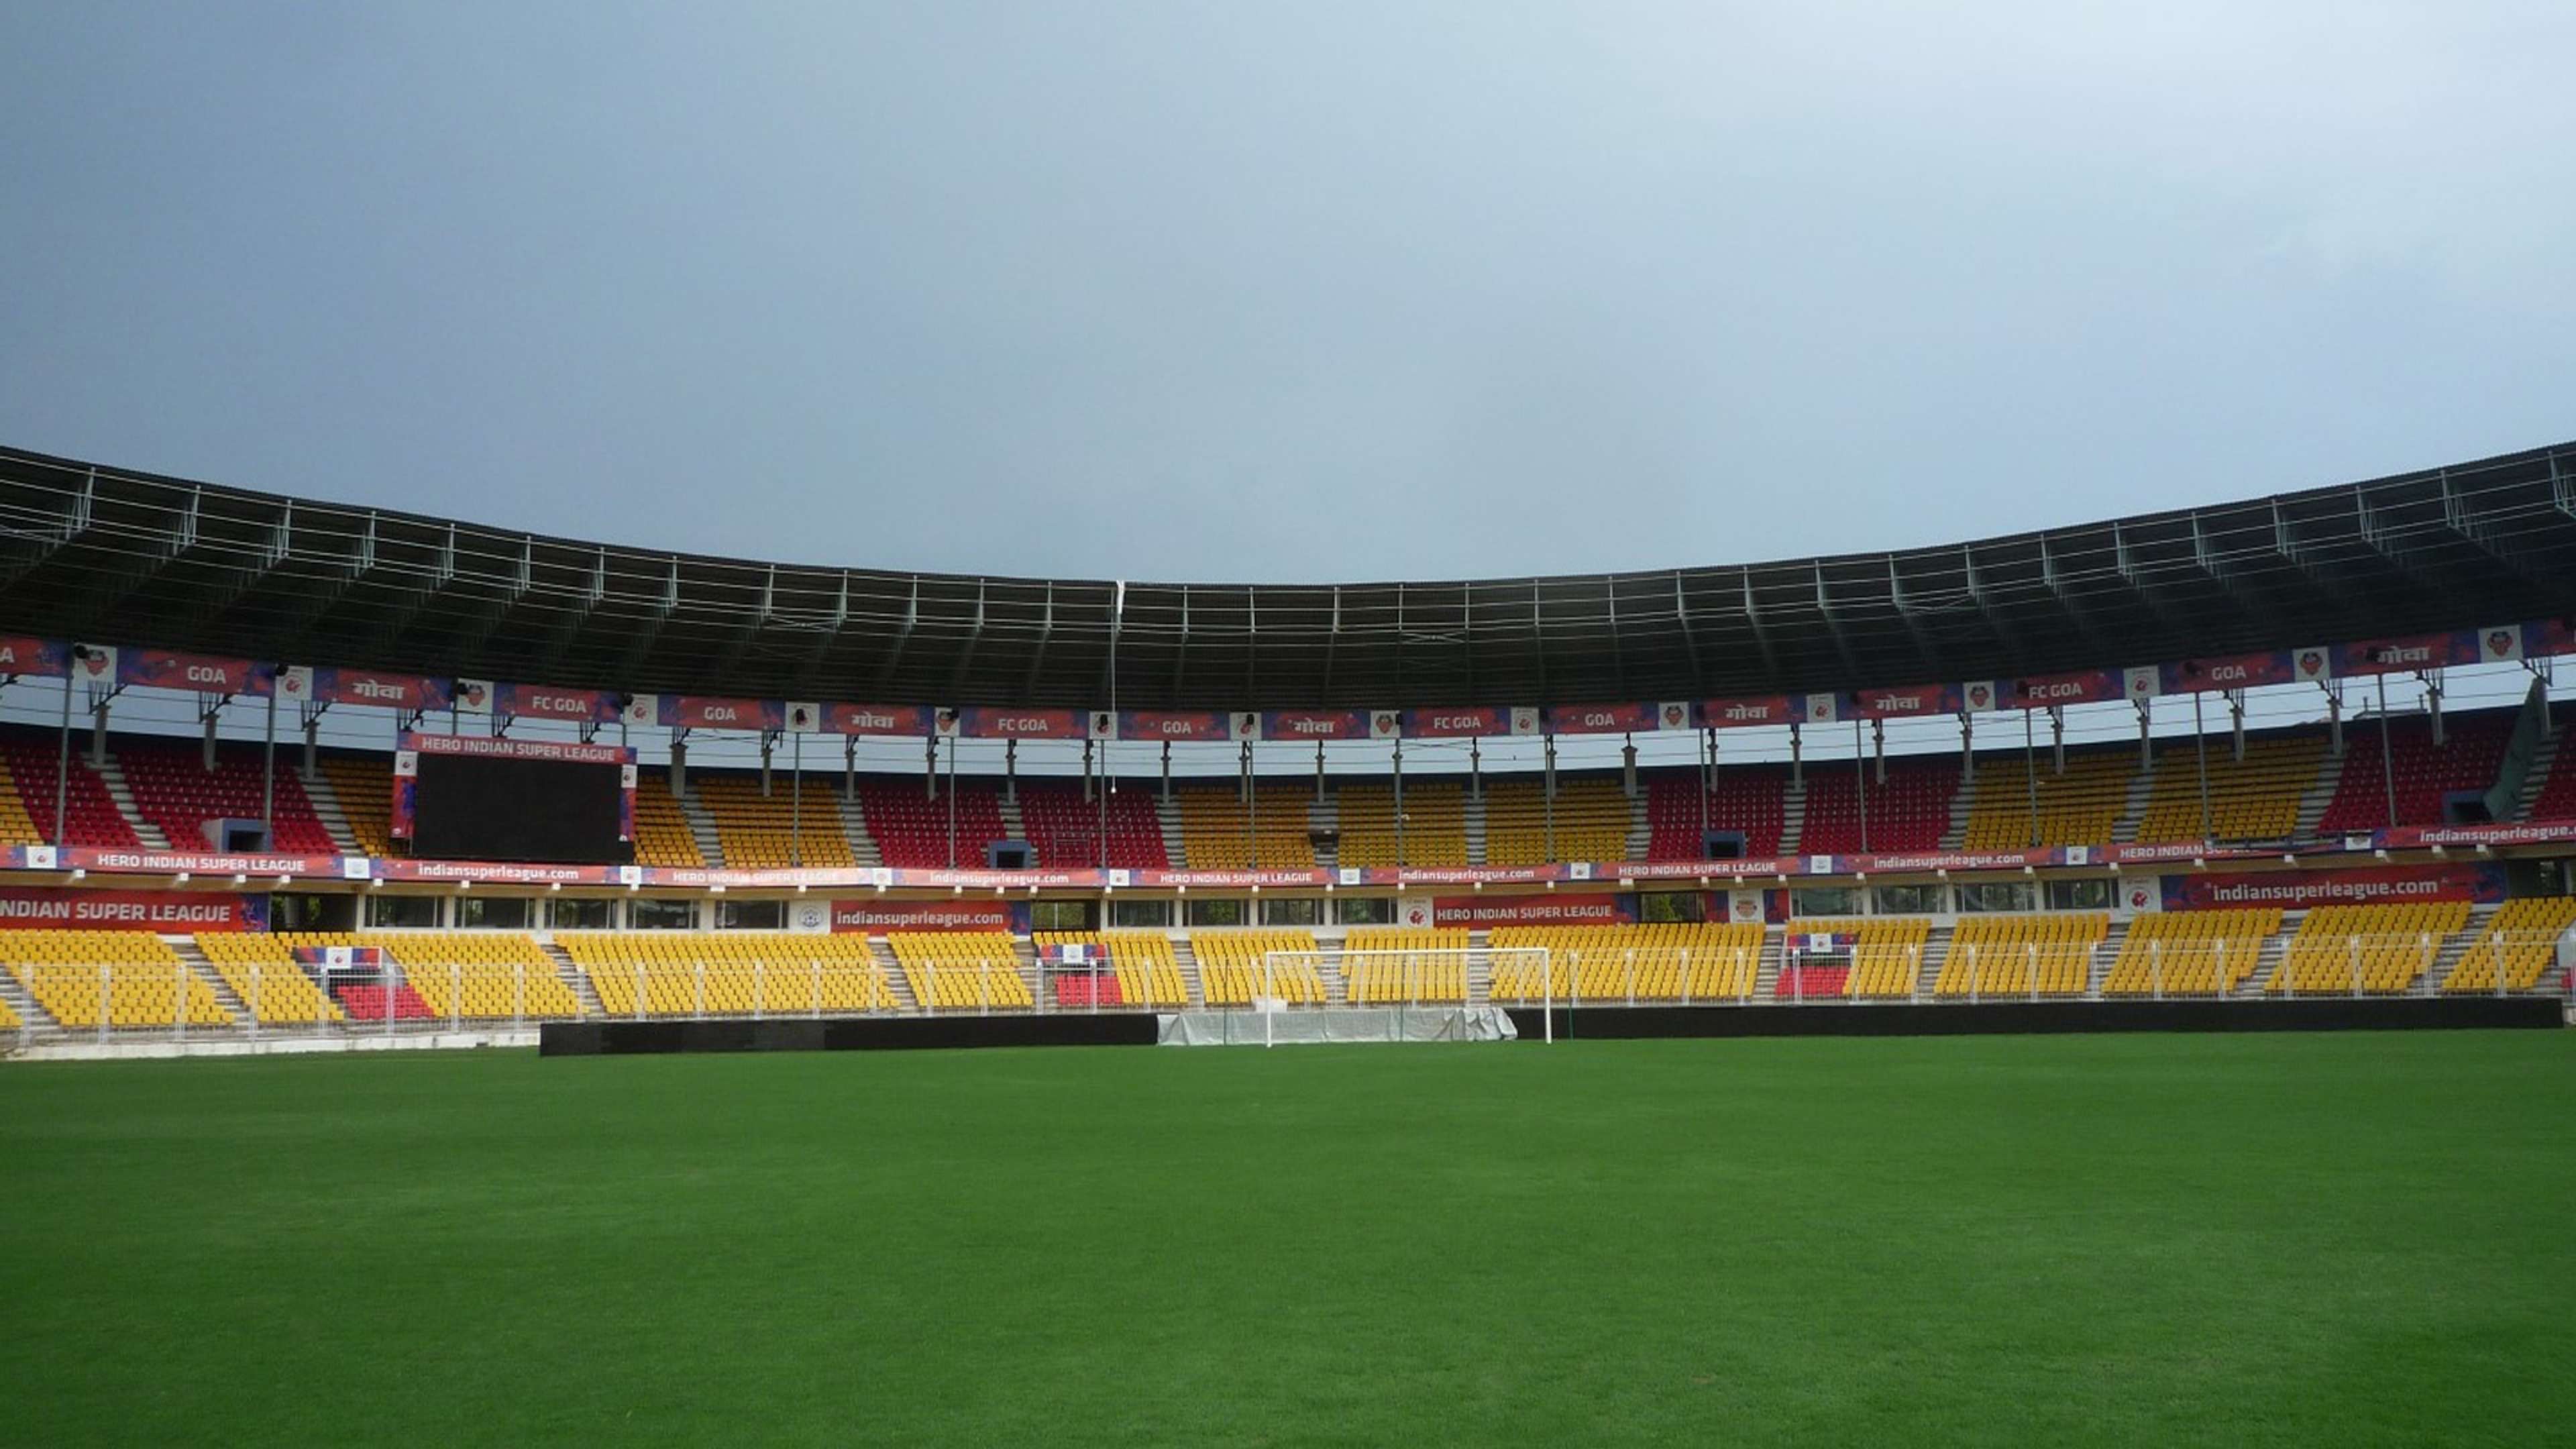 U17 WC Stadium Fatorda Goa